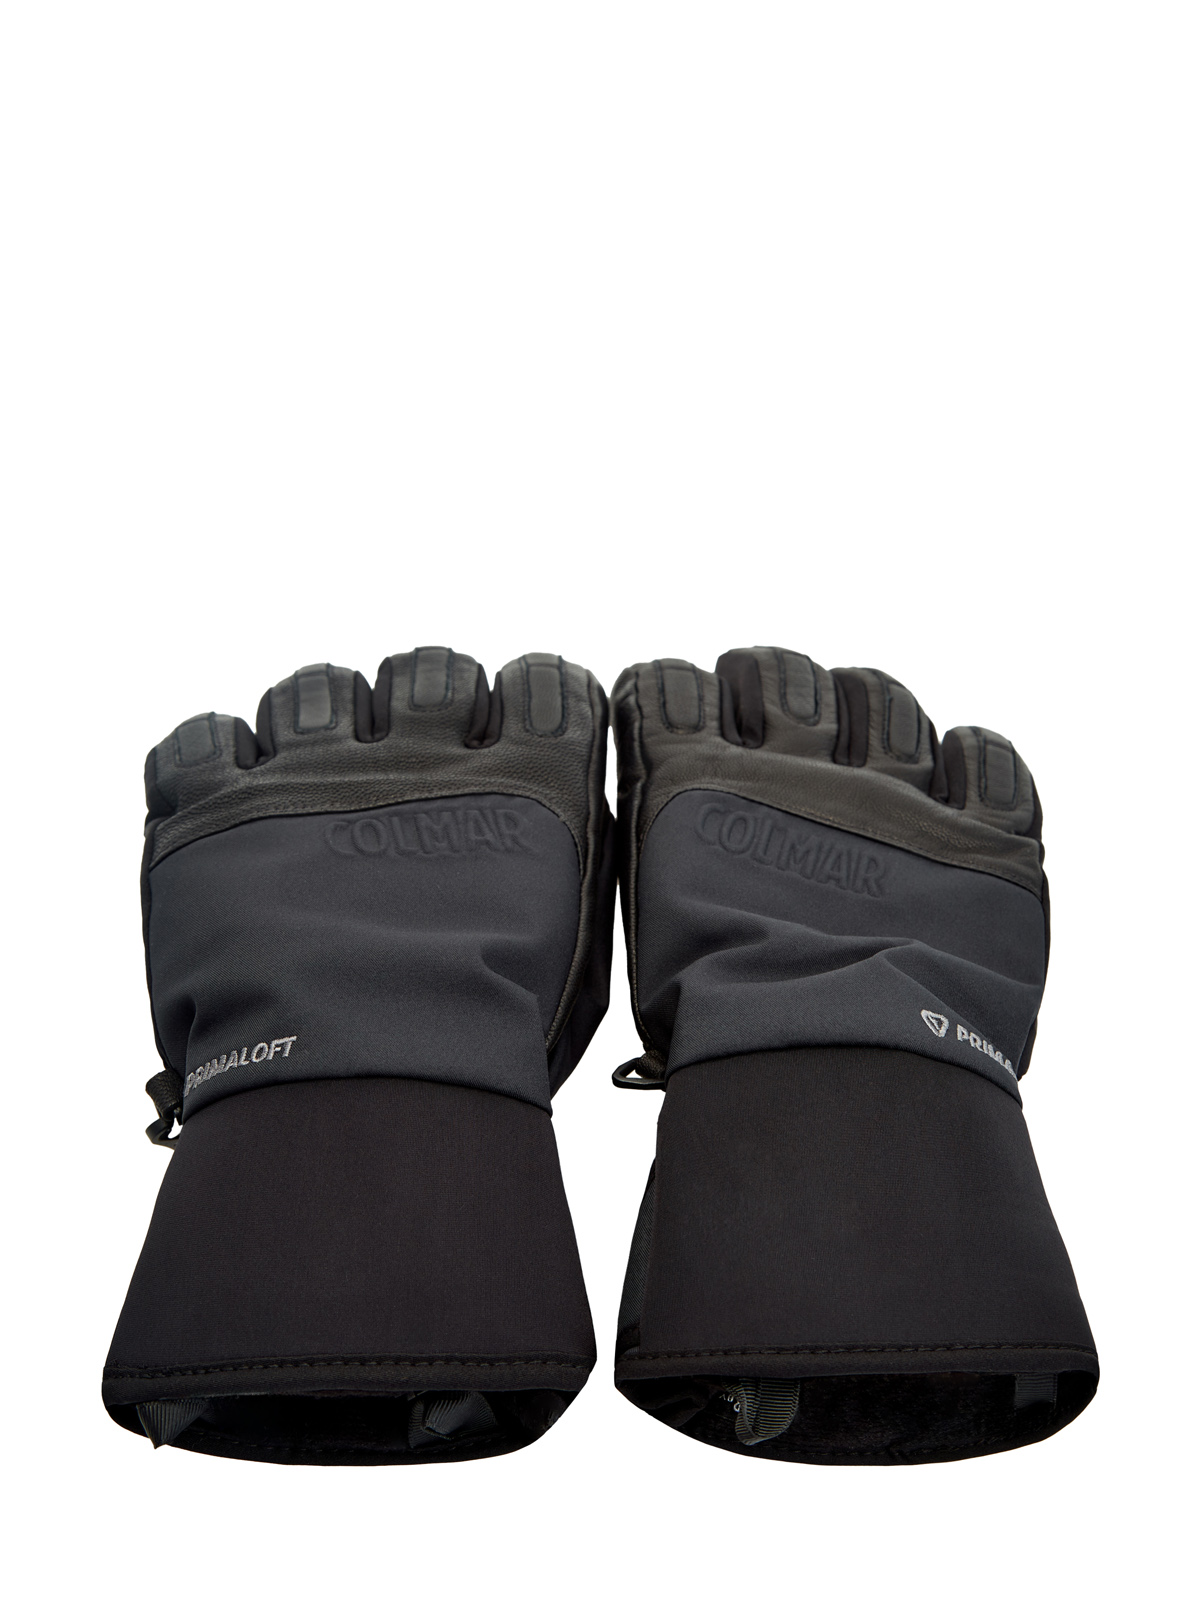 Горнолыжные перчатки из кожи и мембраны с подкладкой PrimaLoft® COLMAR, цвет черный, размер L;XL - фото 2